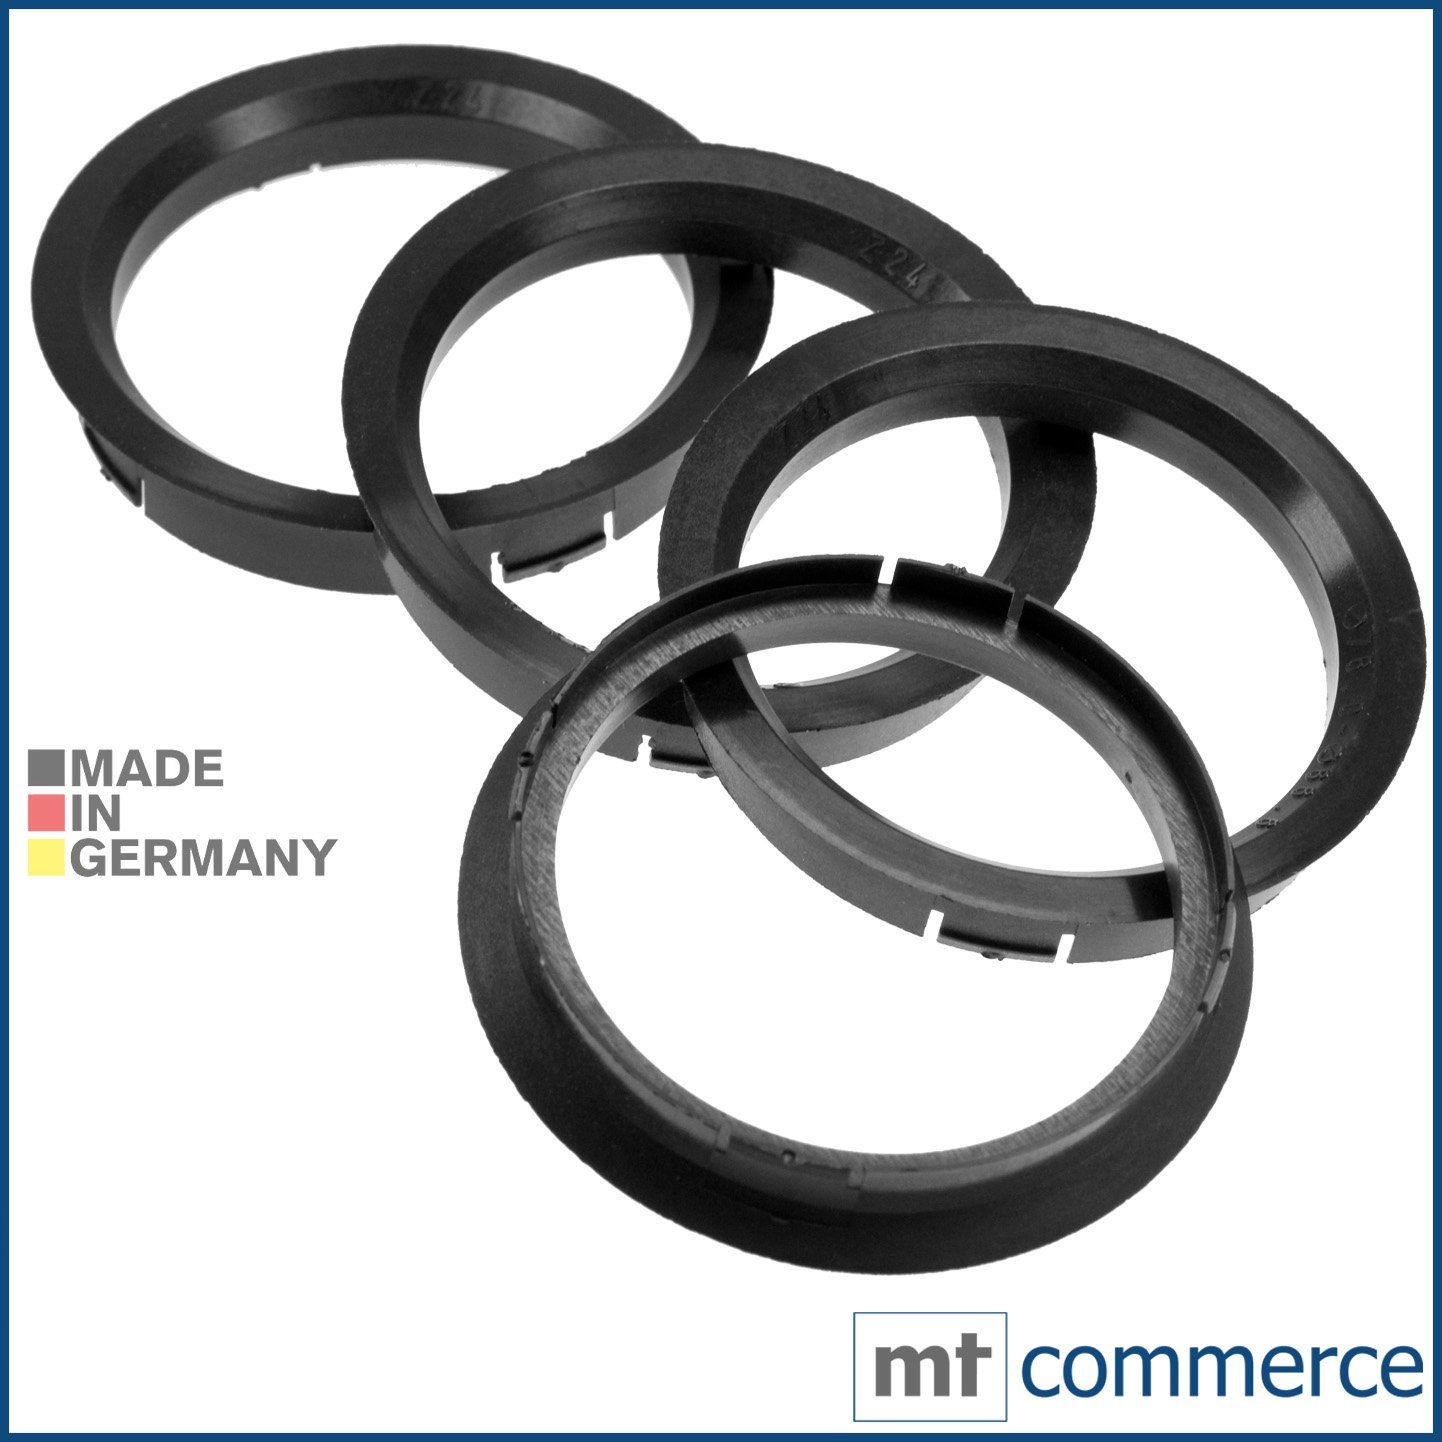 Ringe Zentrierringe Reifenstift schwarz 4X 76,0 Felgen mm x 66,6 in Germany, Maße: RKC Made